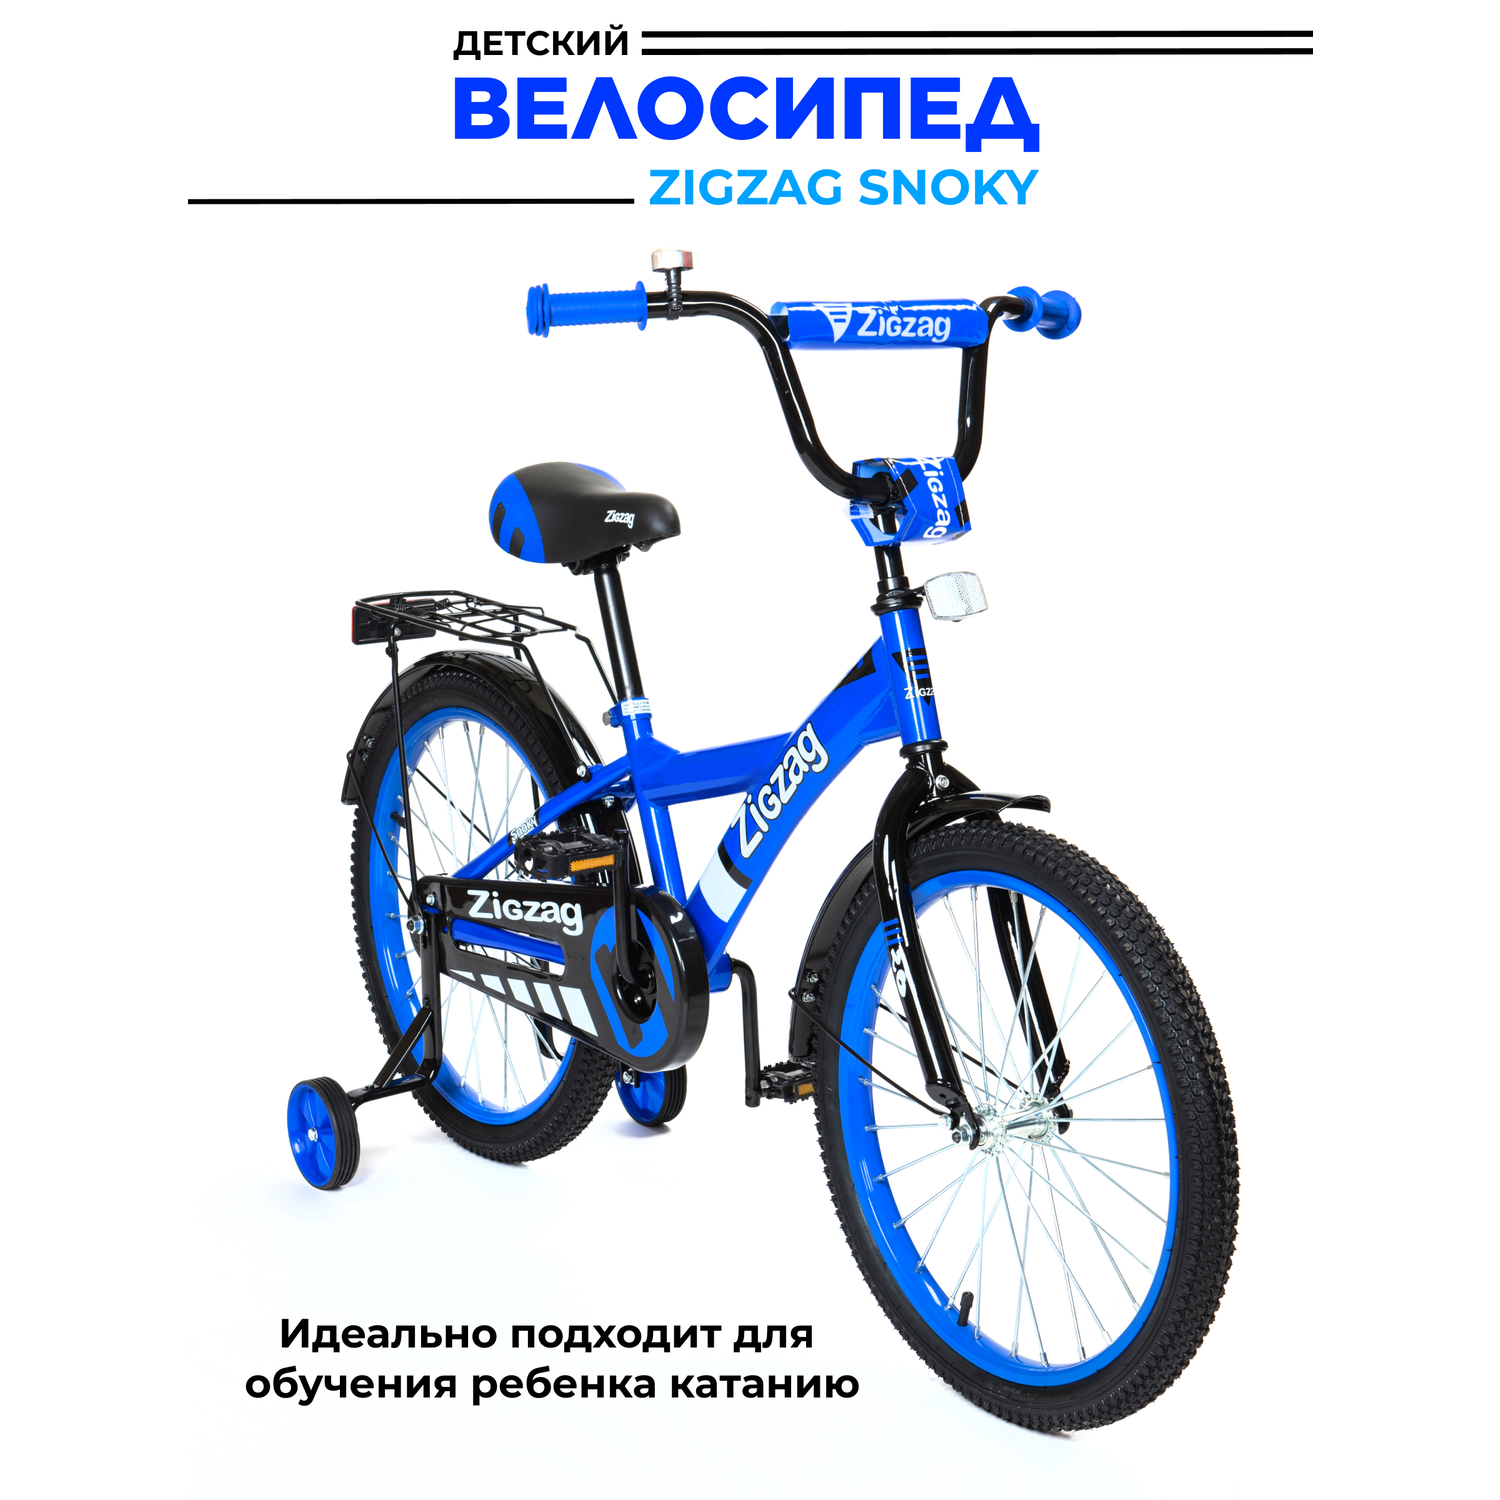 Велосипед ZigZag SNOKY синий 16 дюймов - фото 2